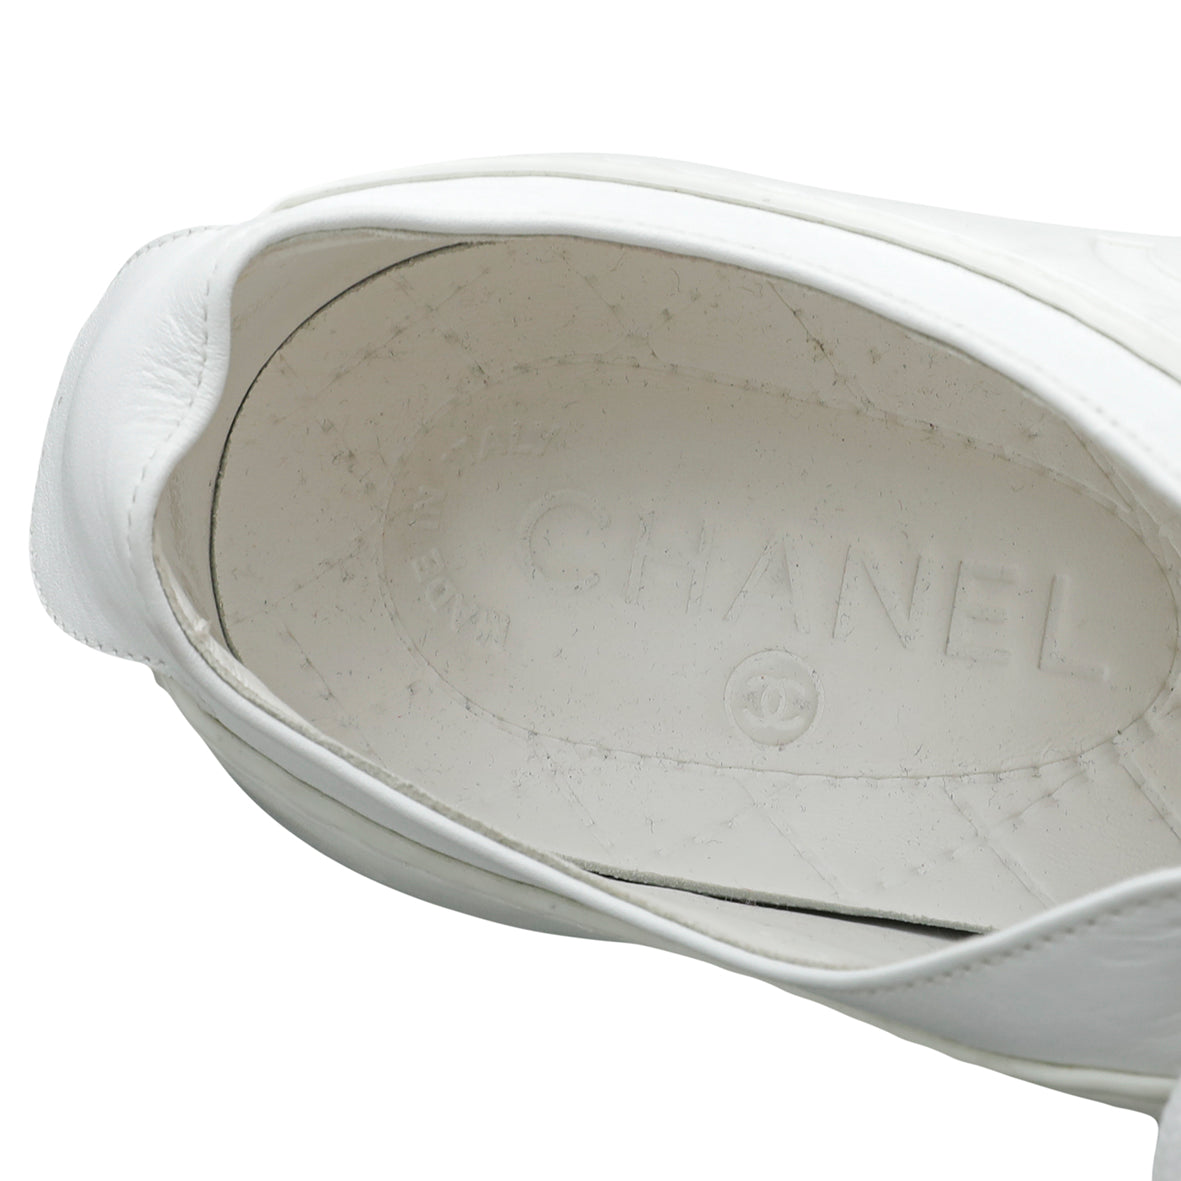 Chanel White CC Low Top Sneaker 36